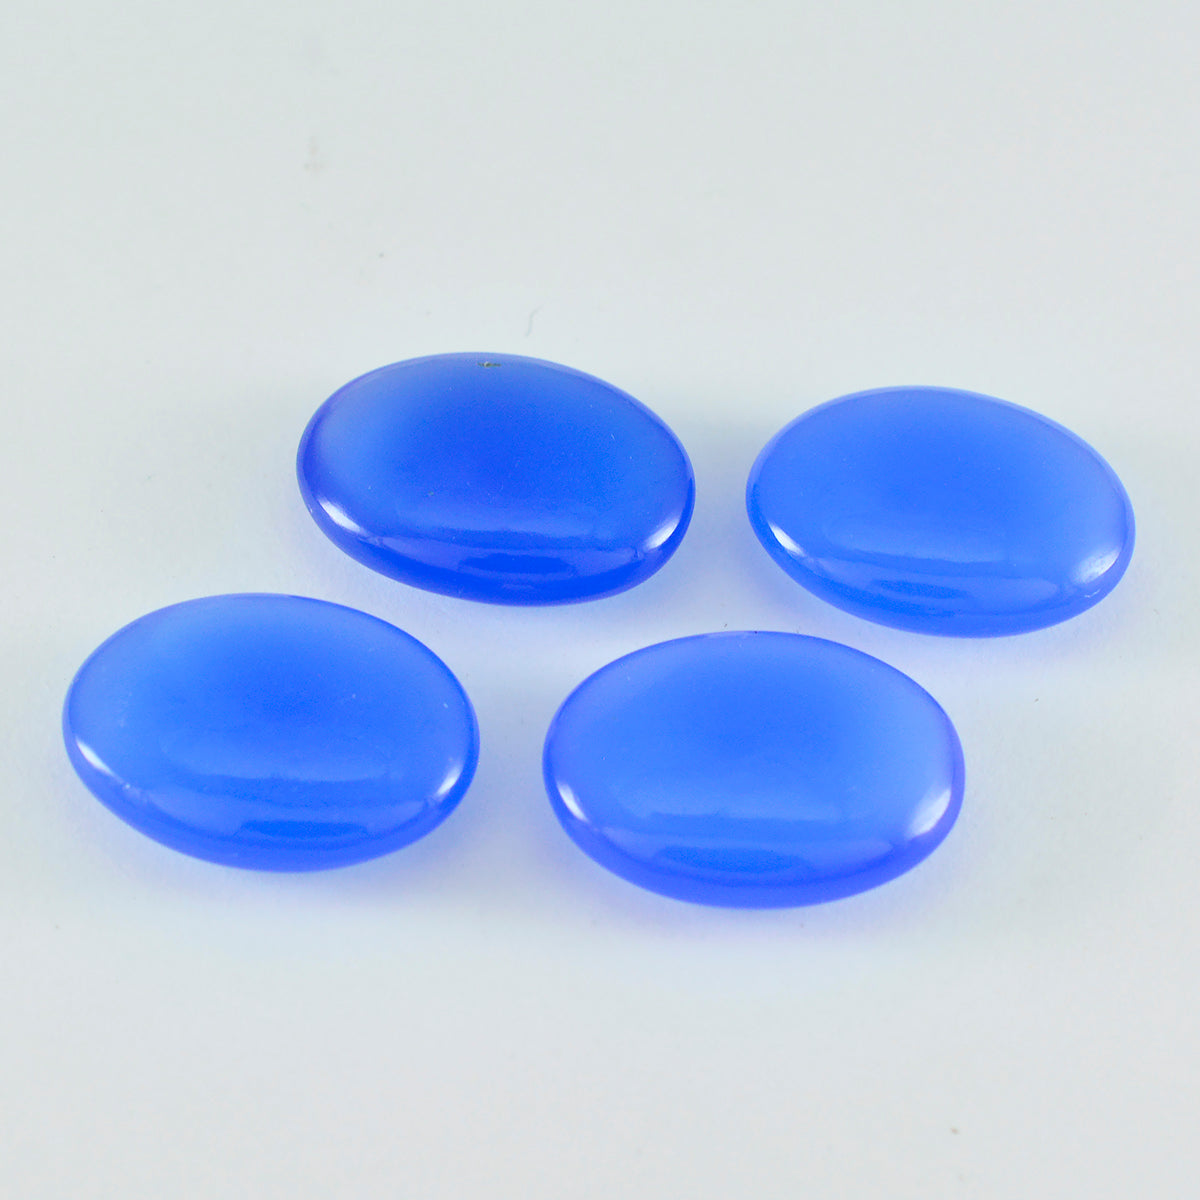 riyogems 1 шт. синий халцедон кабошон 12x16 мм овальной формы милый качественный камень